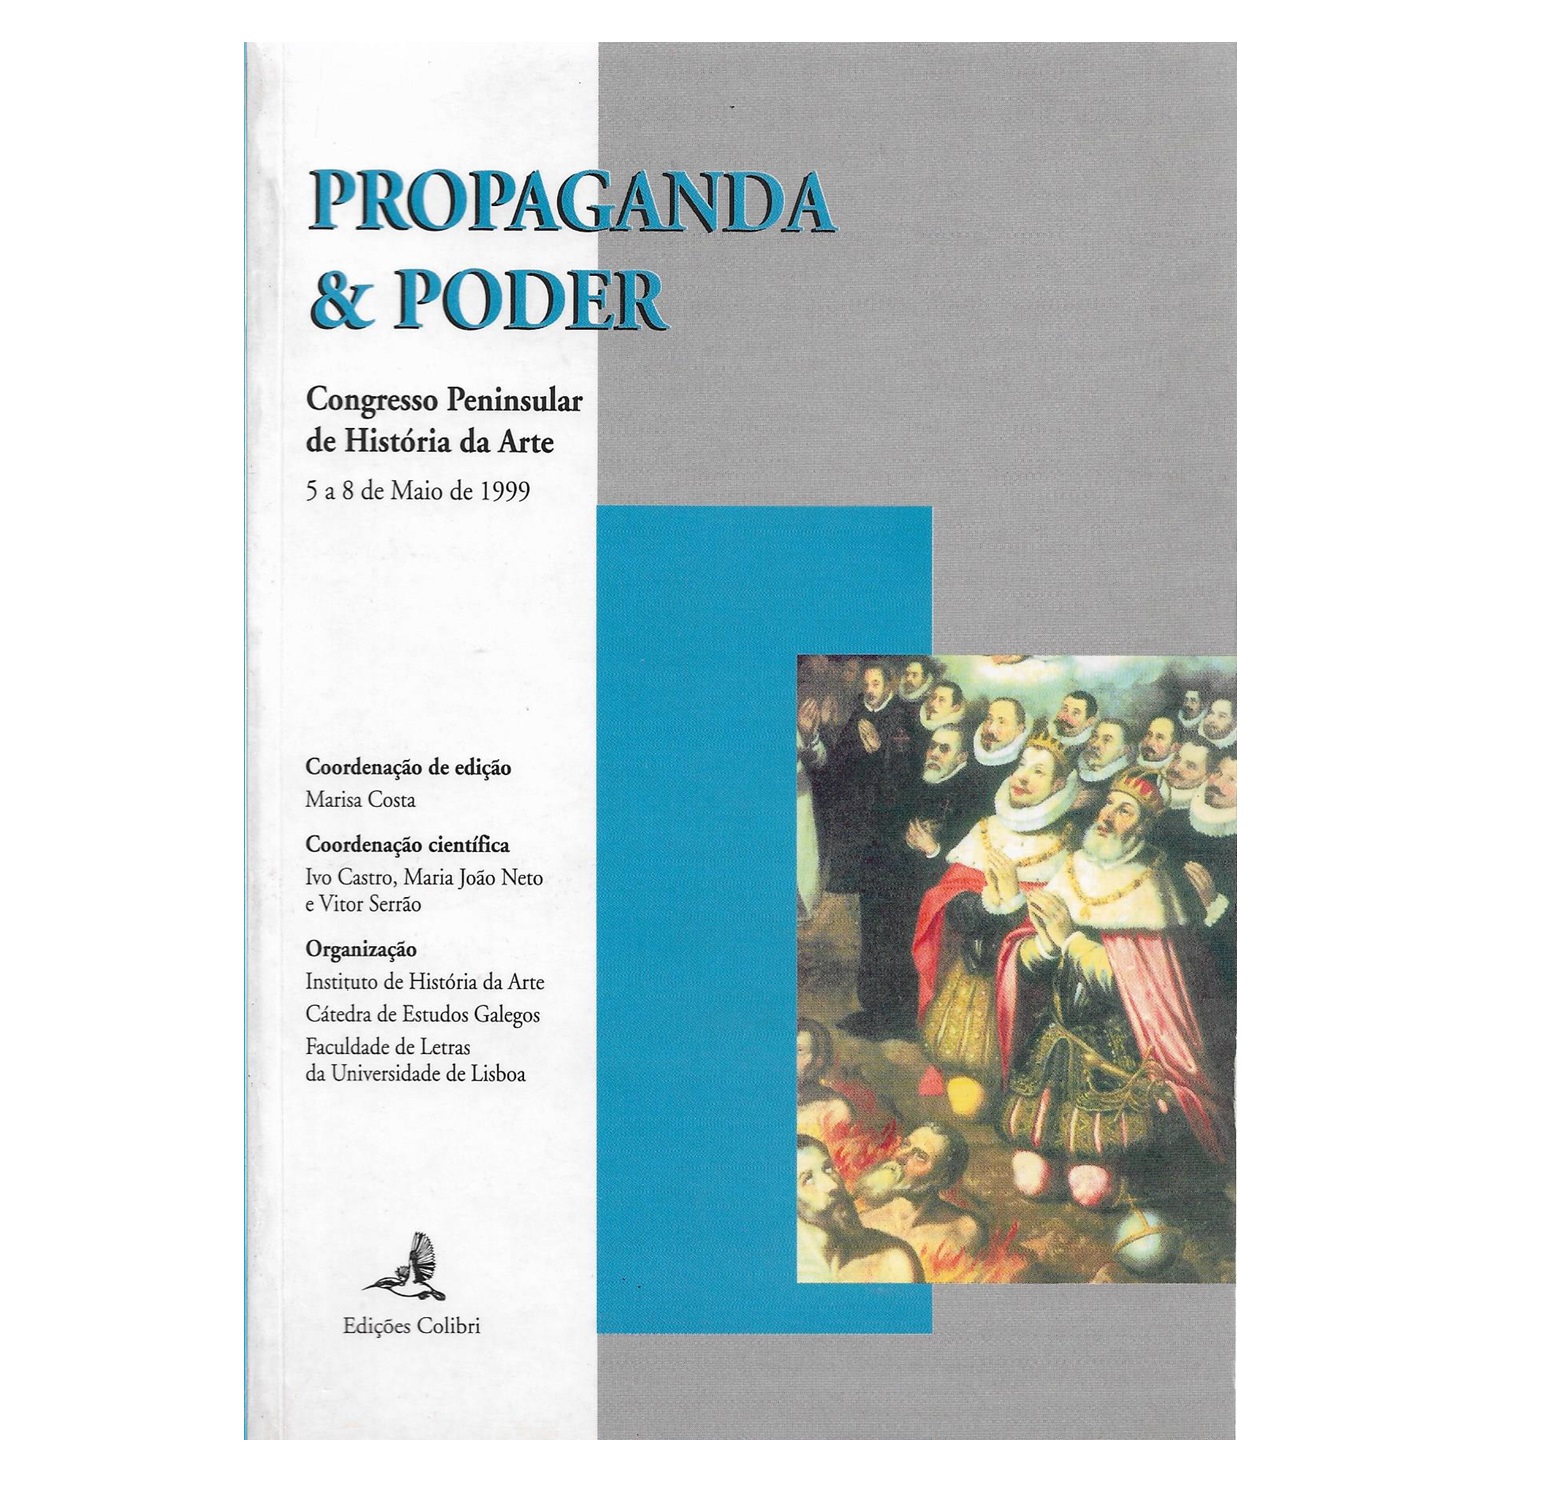 PROPAGANDA & PODER: CONGRESSO PENINSULAR DE HISTÓRIA DE ARTE